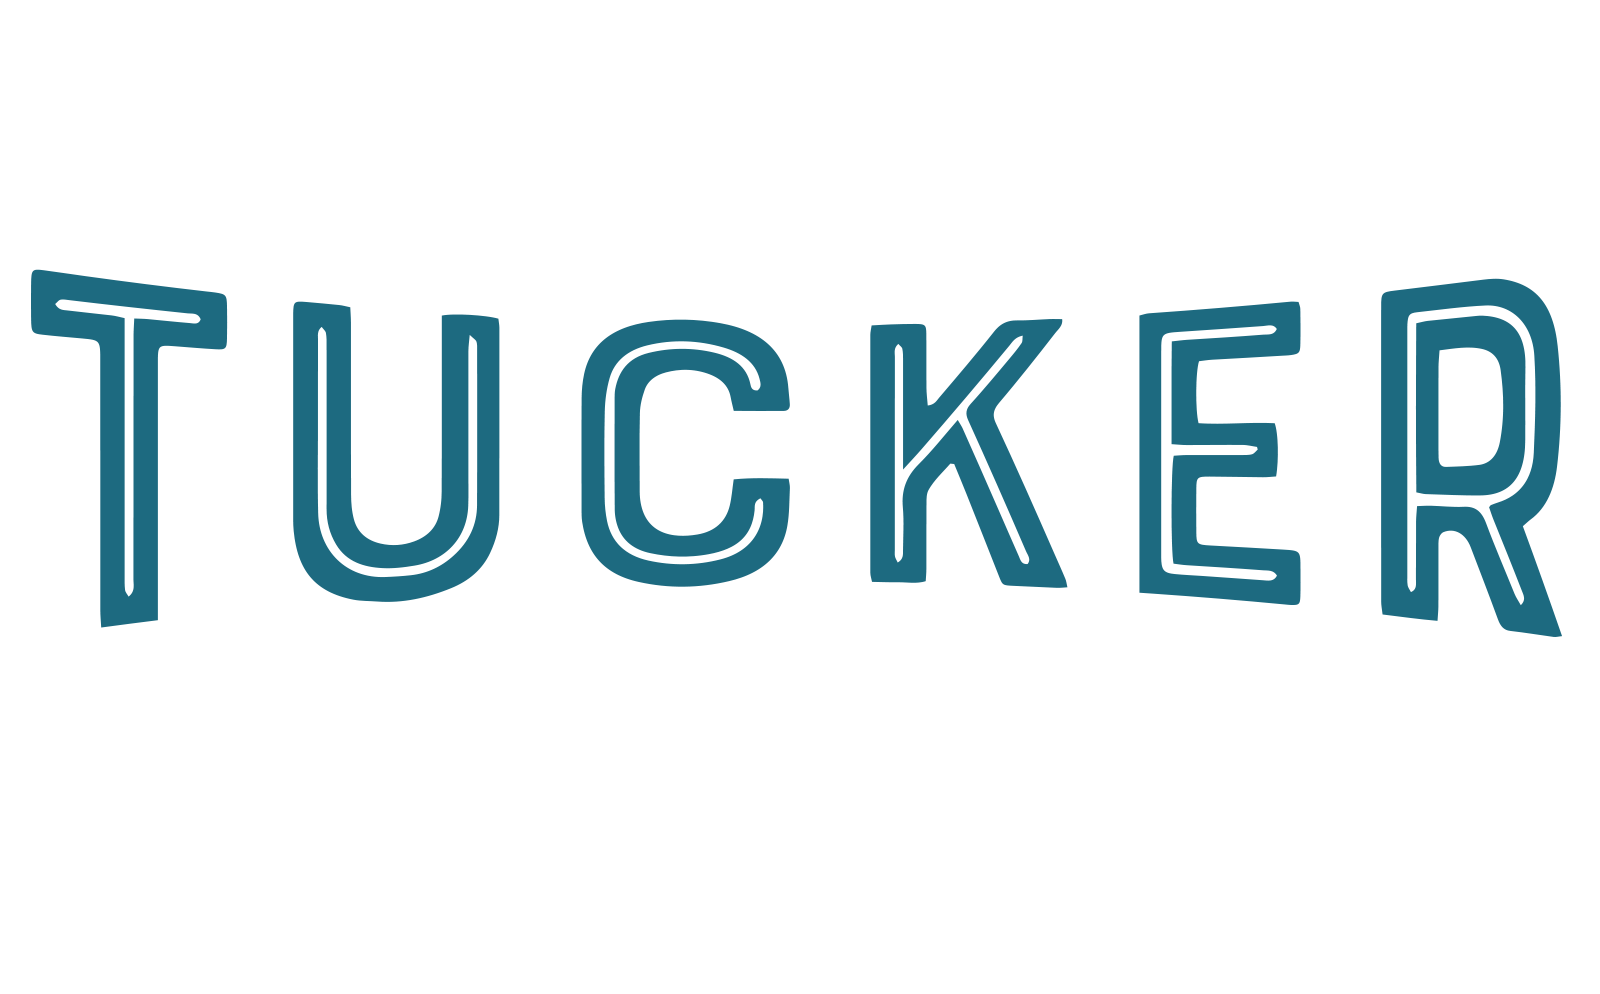 Tucker Silk Mill